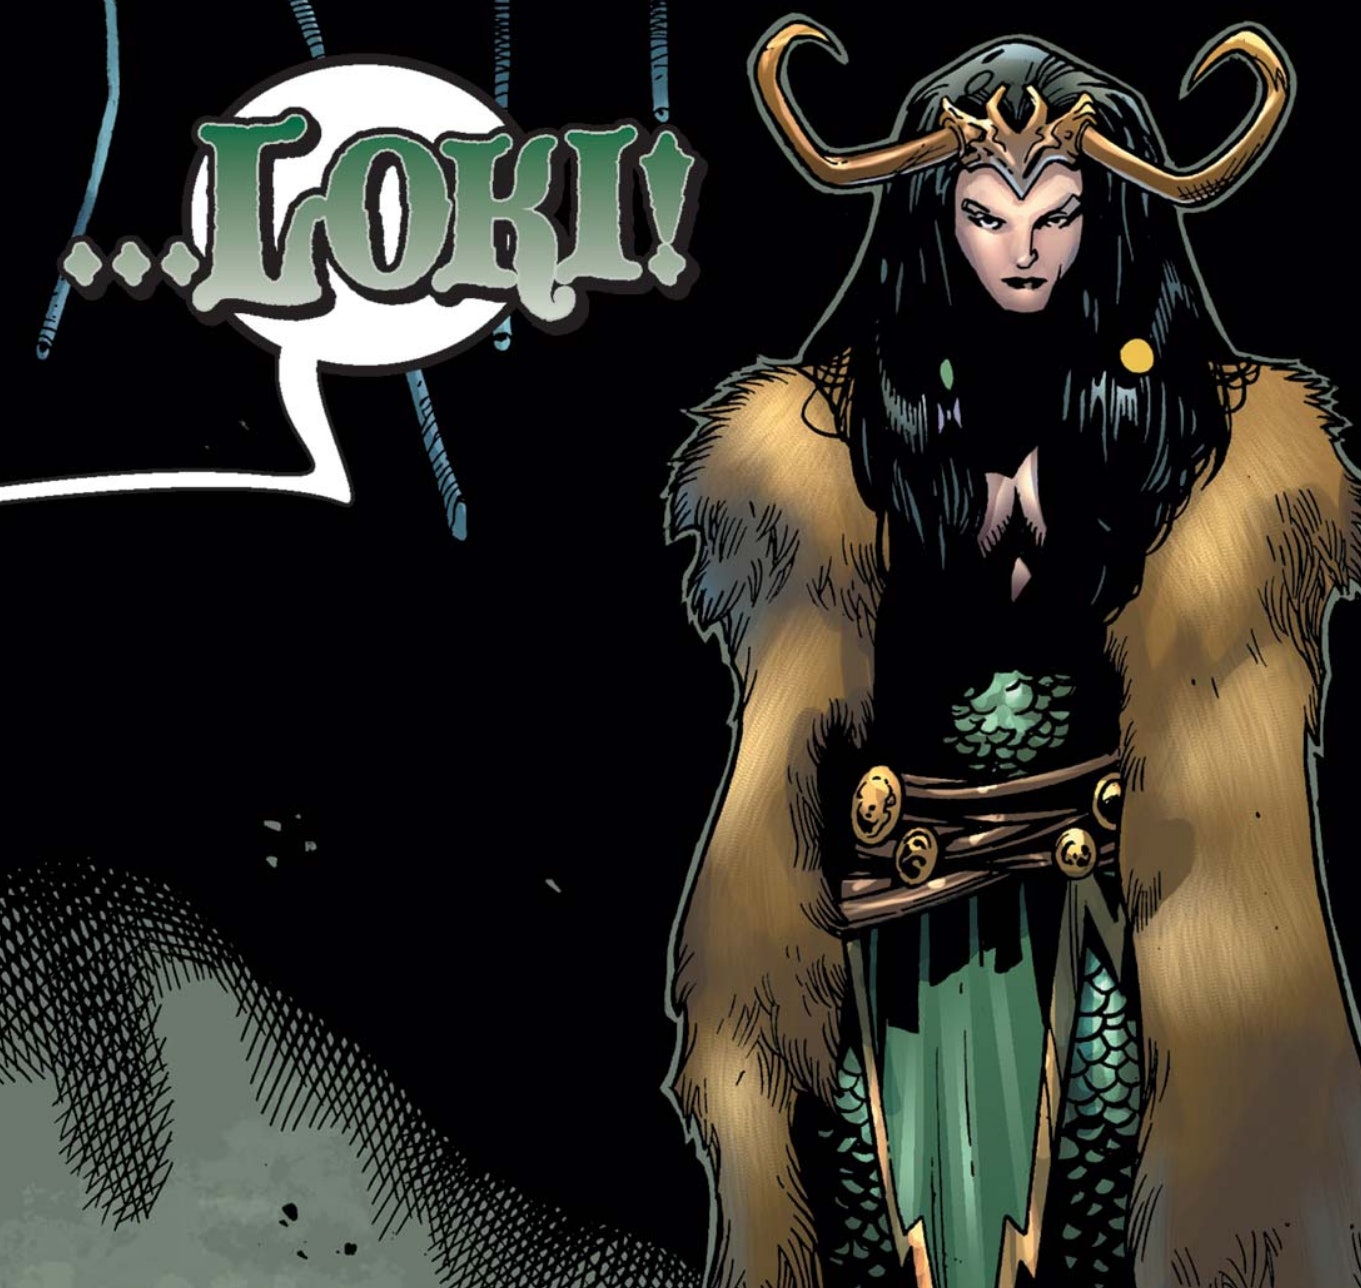 Une histoire d'amour entre Loki et Lady Loki pourrait se produire dans la série Disney